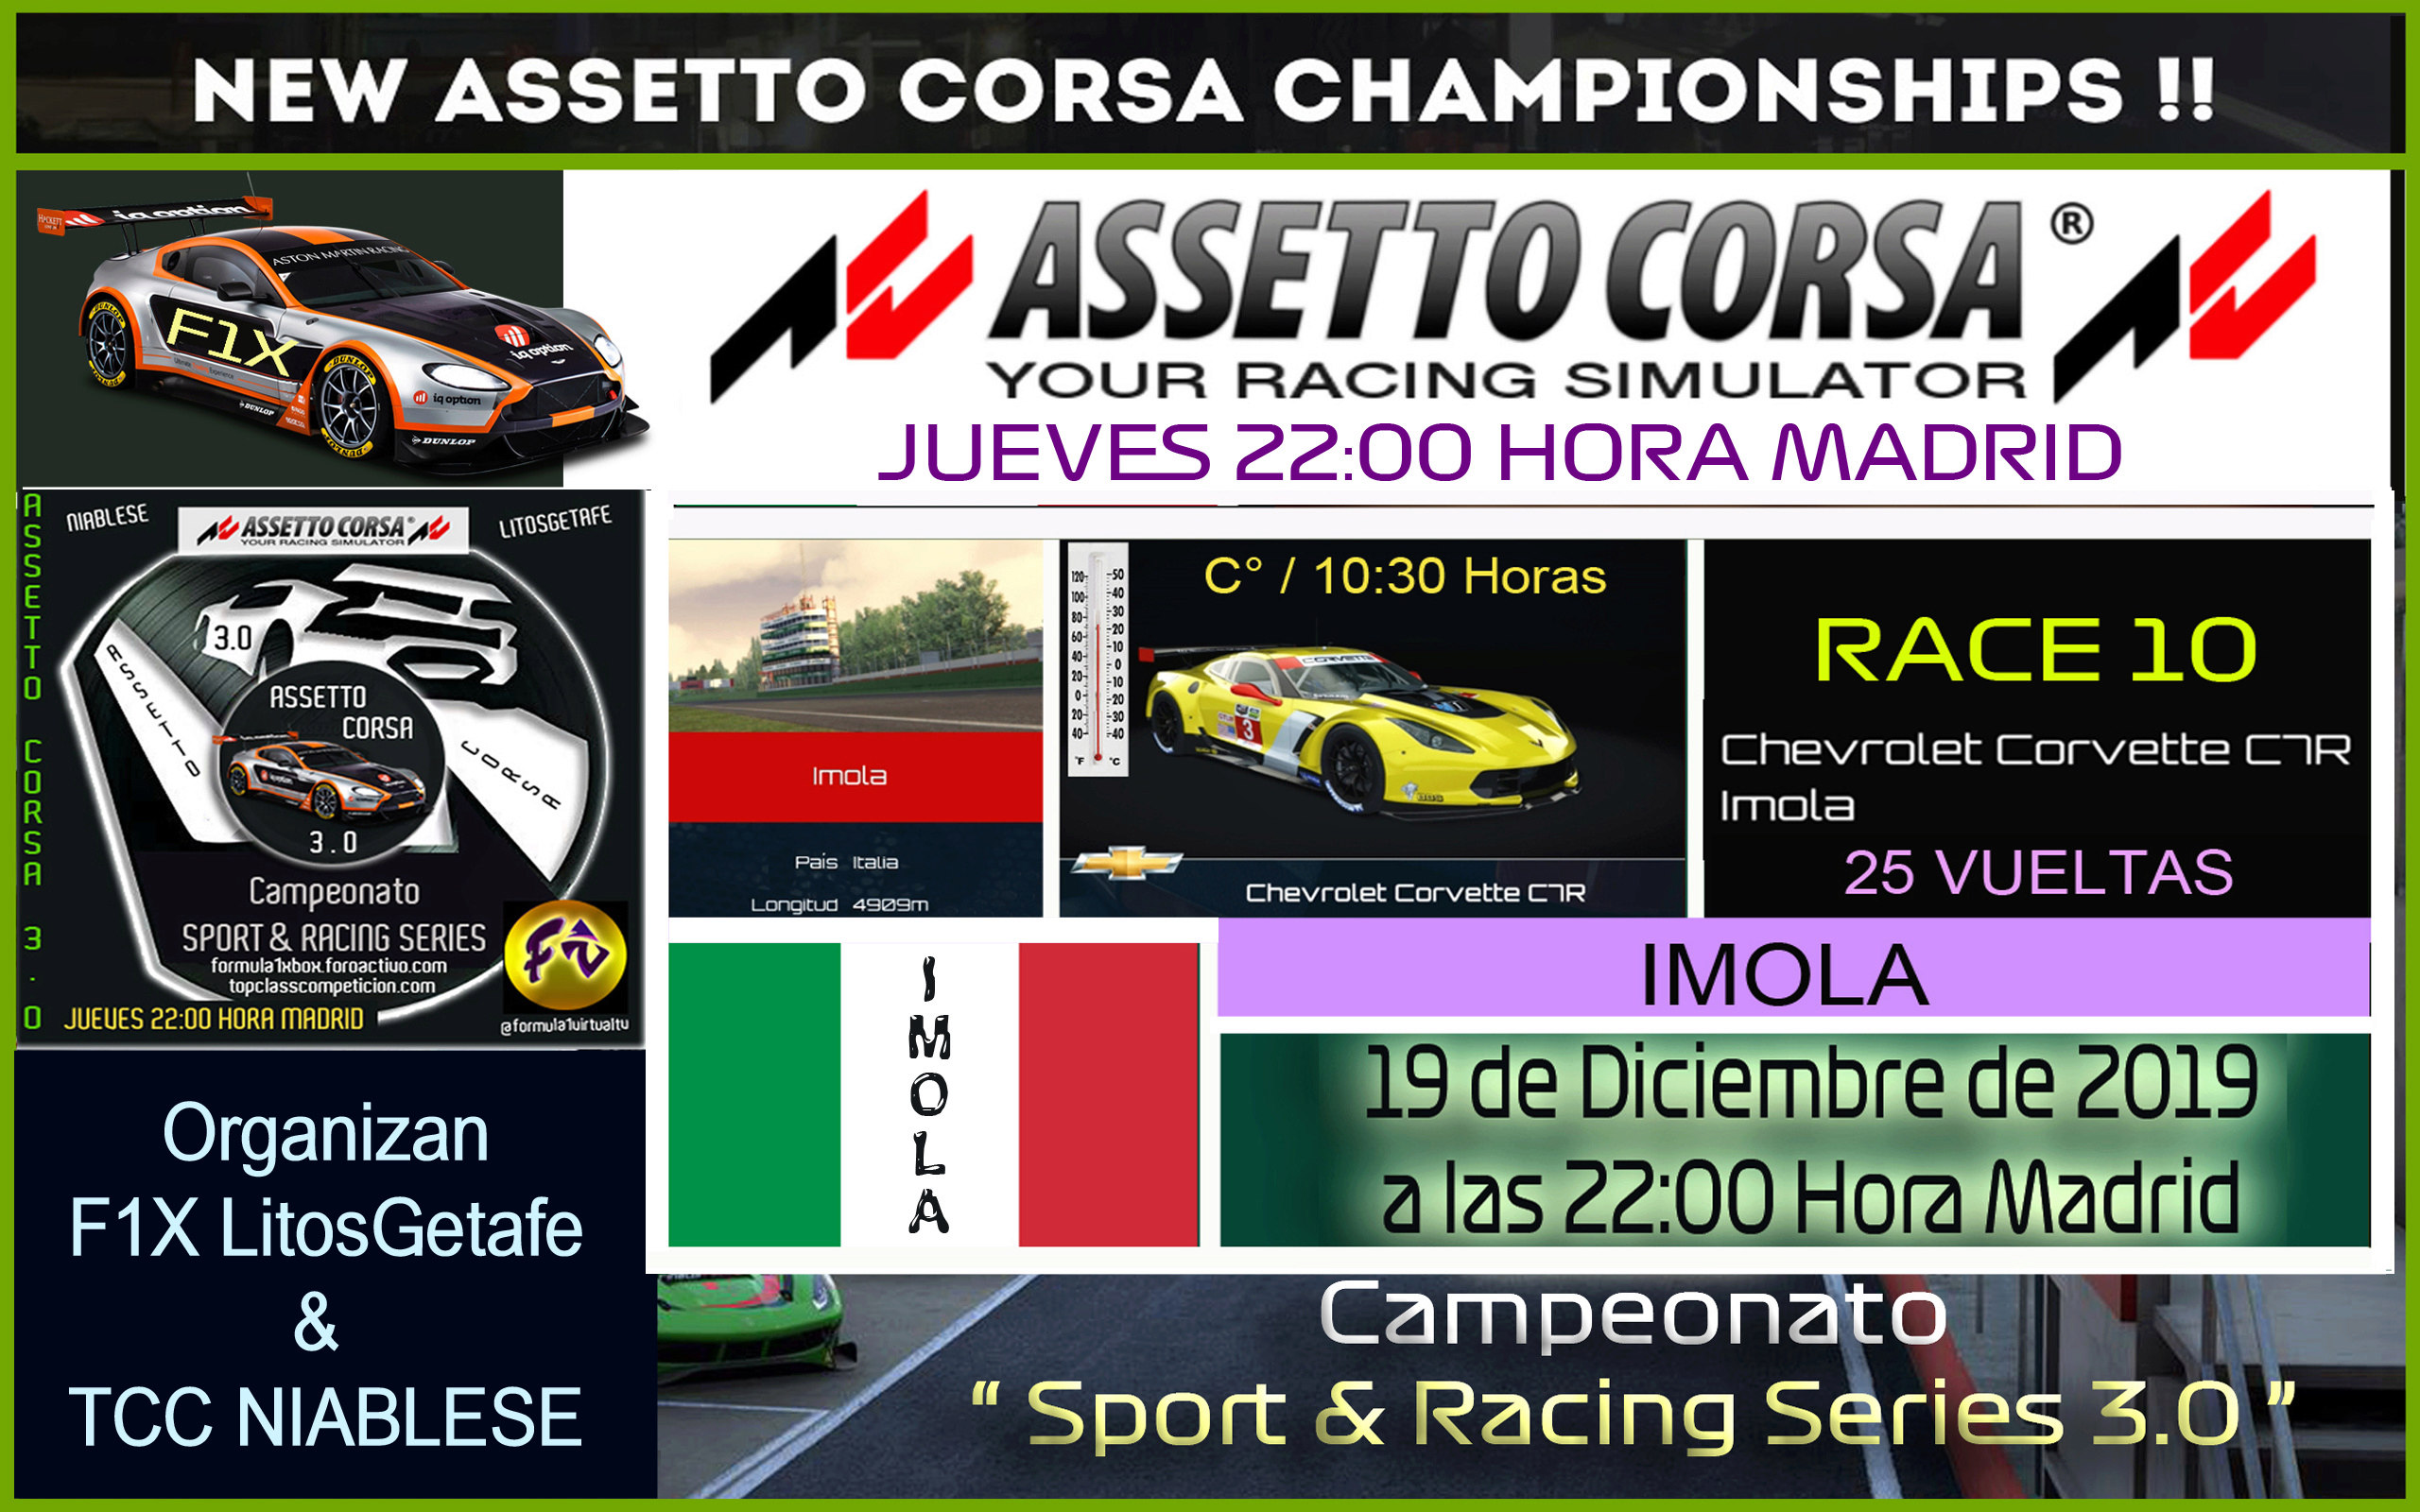  ASSETTO CORSA /// CAMPEONATO SPORT & RACING SERIES 3.0 /// RACE 10 *  IMOLA * 19 - 12 - 2019 / RESULTADOS + PODIUM + CLASIFICACION GENERAL. Confir30